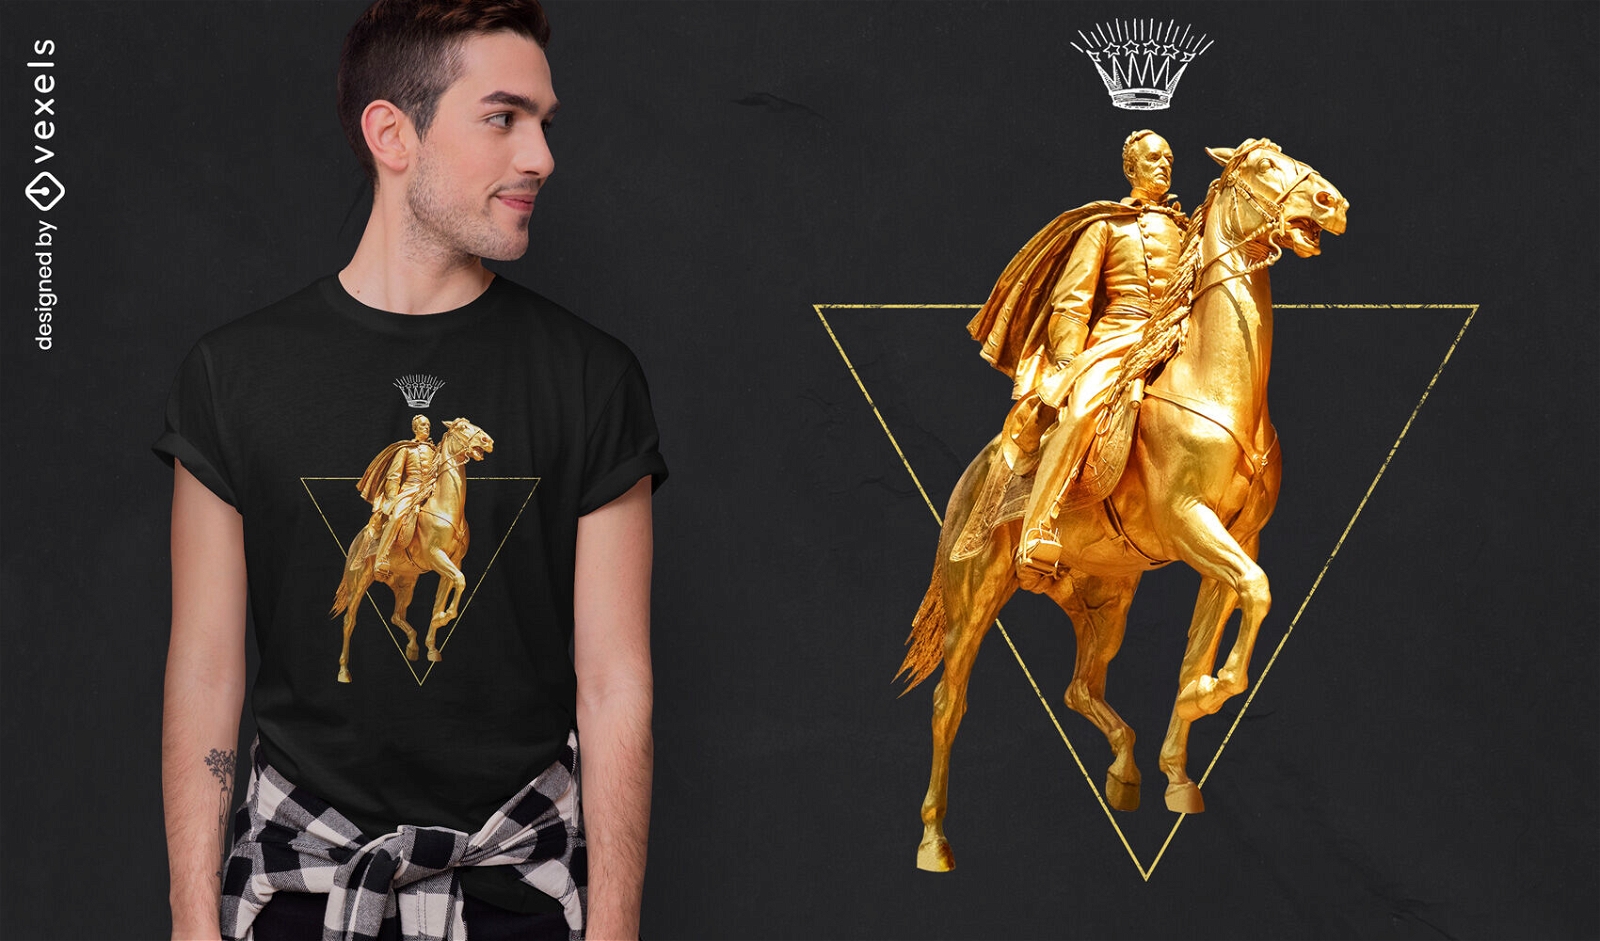 Diseño de camiseta psd golden horse and man